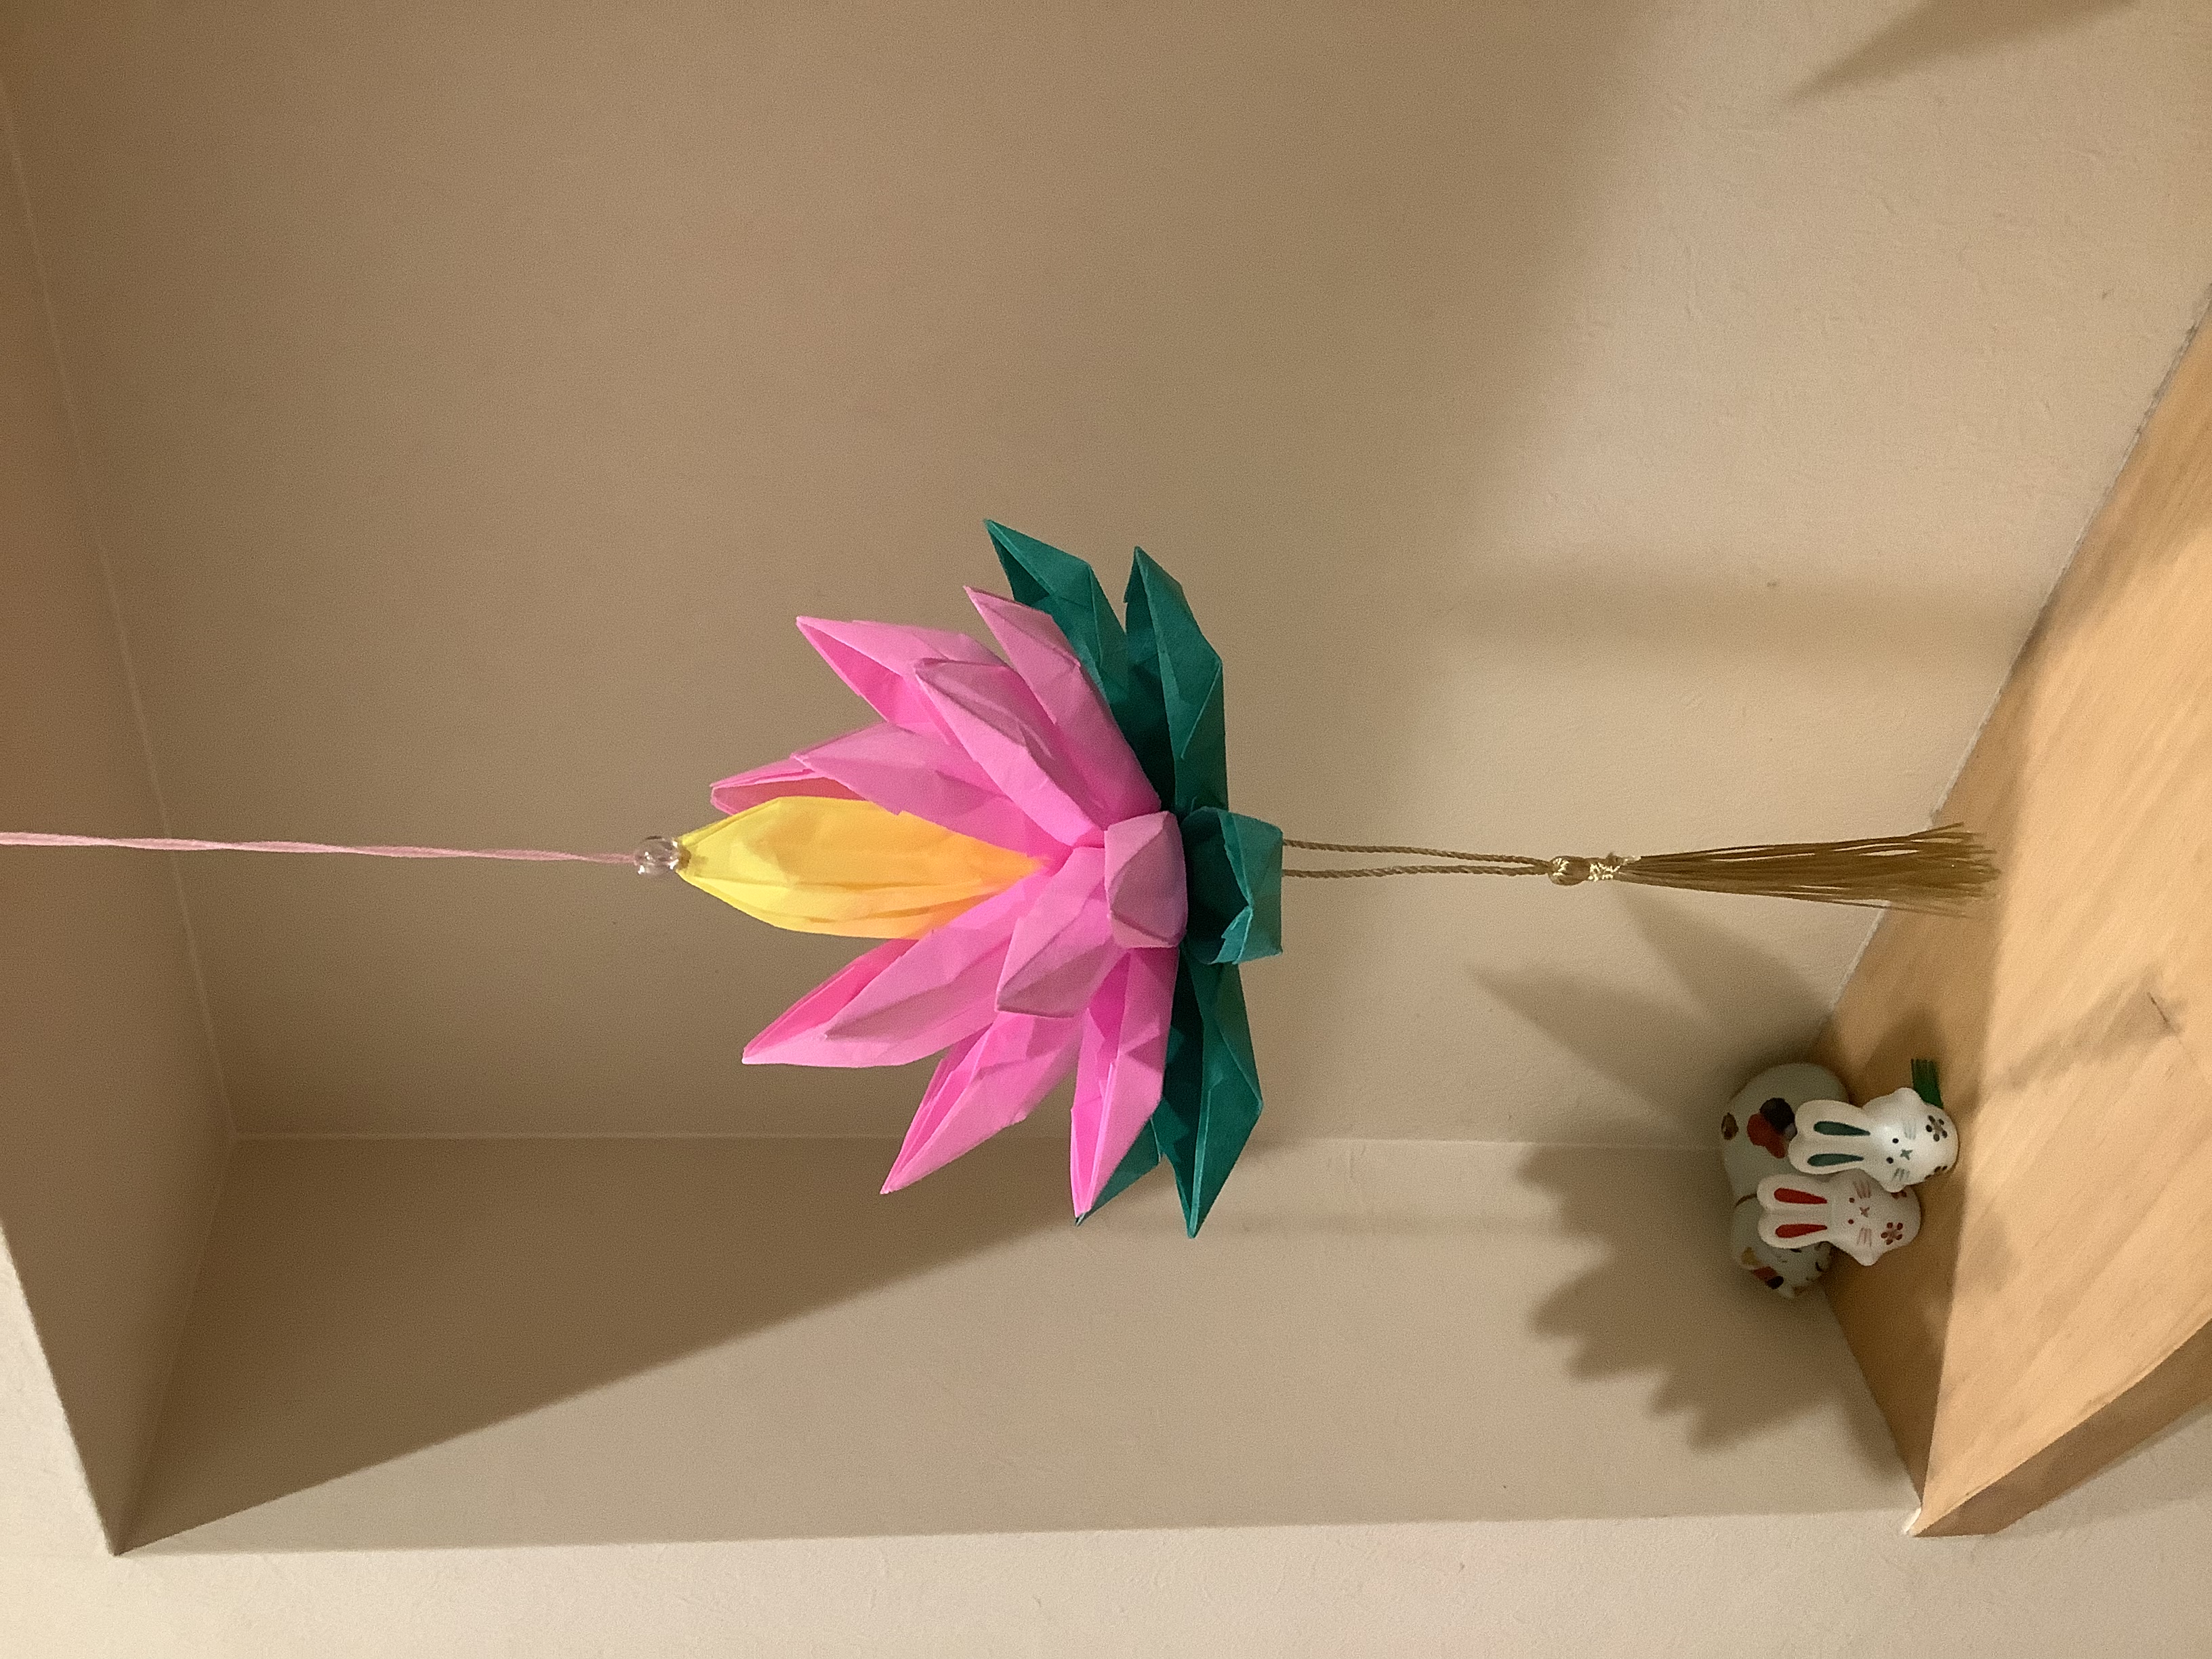 2022/07/01(Fri) 21:37「「はすの花」吊るし飾り」馬場久美子
（創作者 Author：韓国の伝承,　製作者 Folder：馬場久美子,　出典 Source：）
 お盆の時に飾りたいと思い作りました。